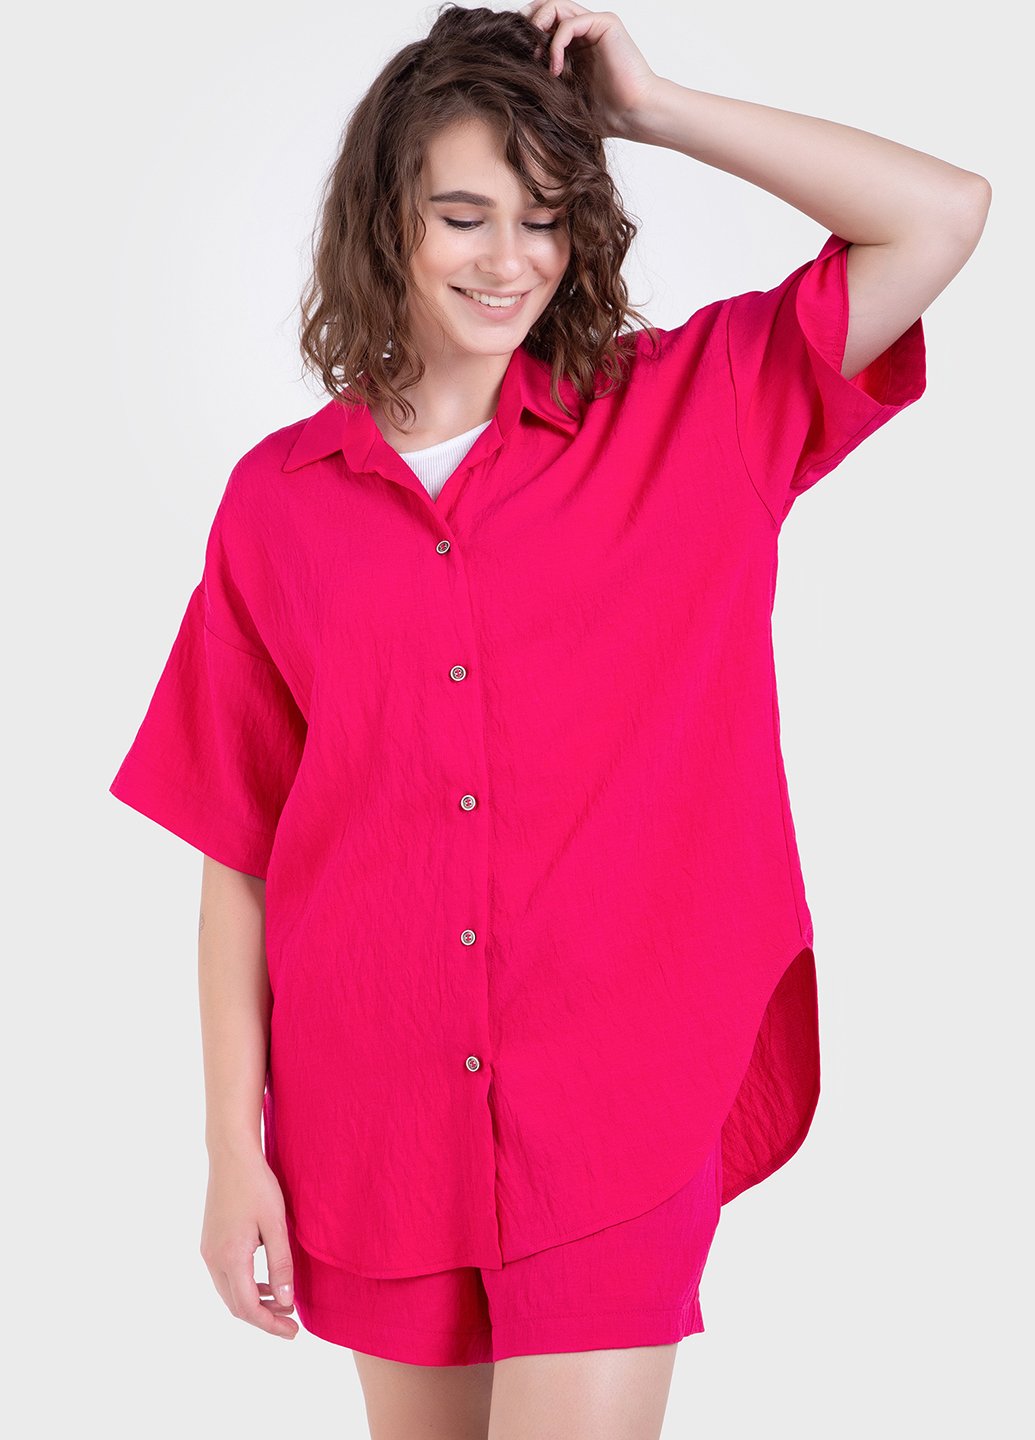 Купить Оверсайз рубашка женская малинового цвета из льна-жатки Merlini Авеллино 200000067, размер 42-44 в интернет-магазине